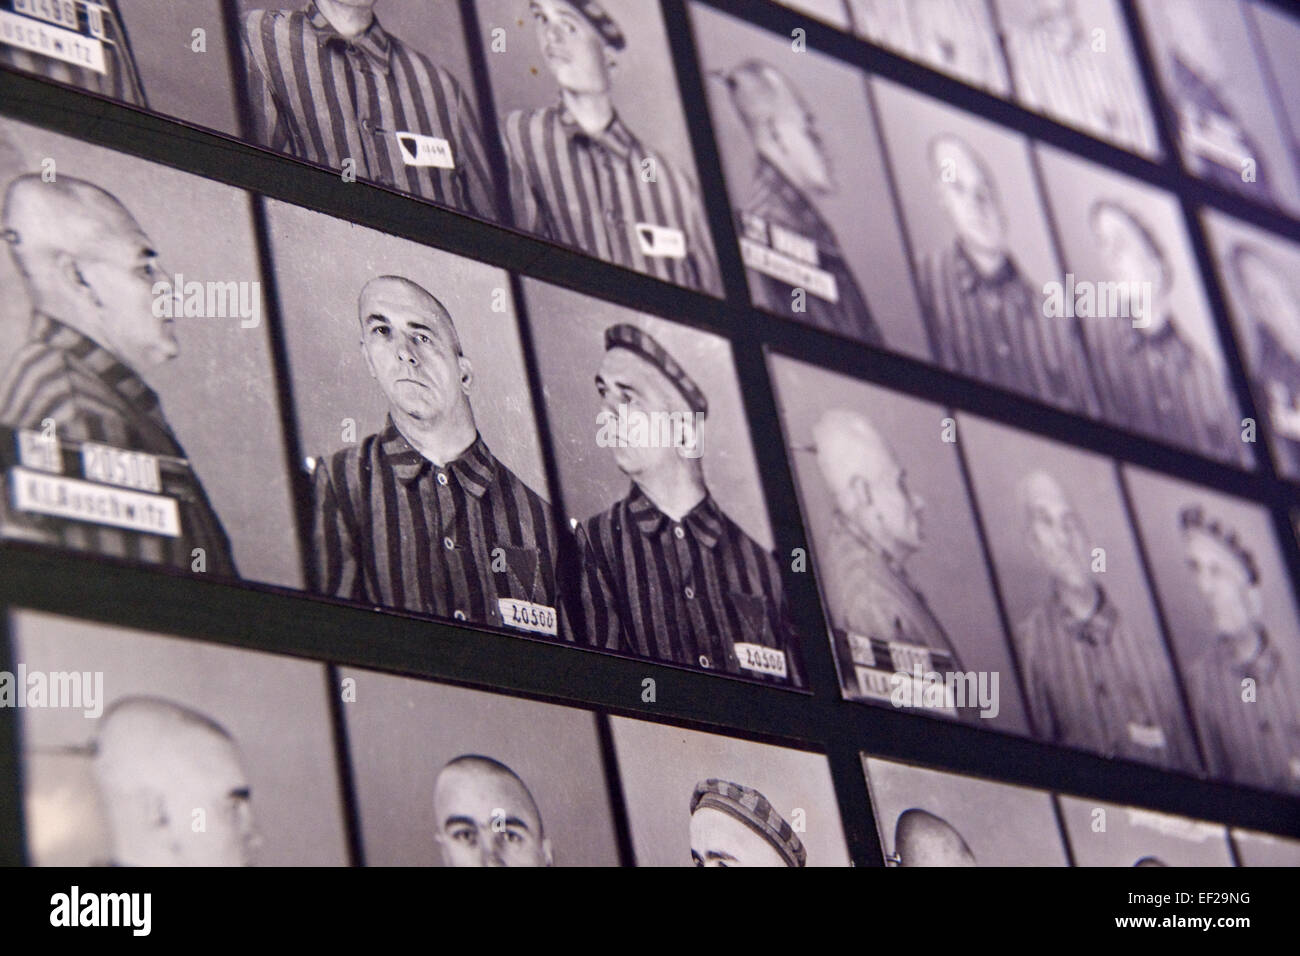 Fotos der Opfer in Auschwitz Lager des staatliches Museum Auschwitz-Birkenau Denkmal angezeigt. Stockfoto